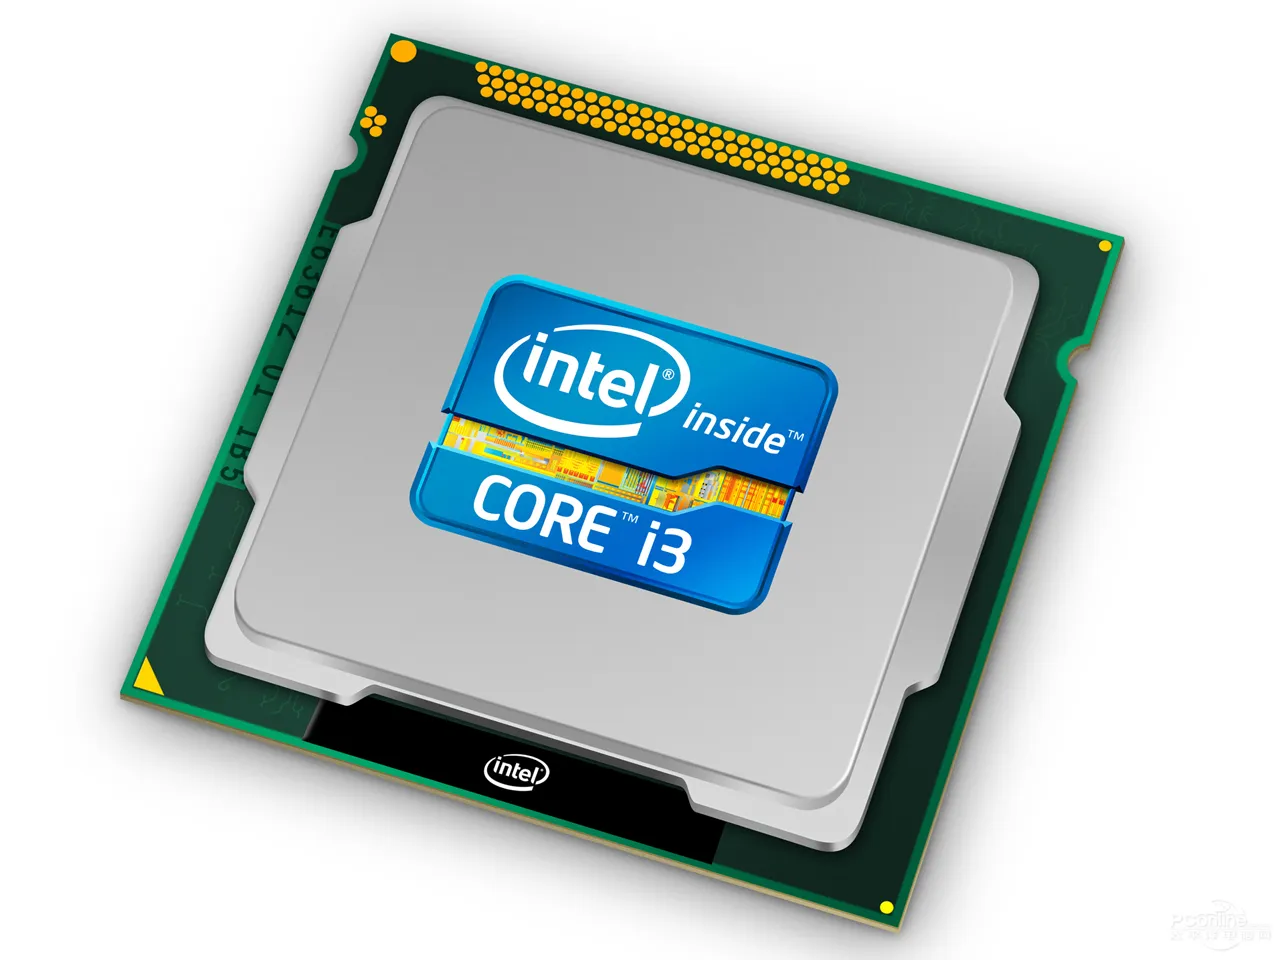 Intel酷睿i3 3220/散装